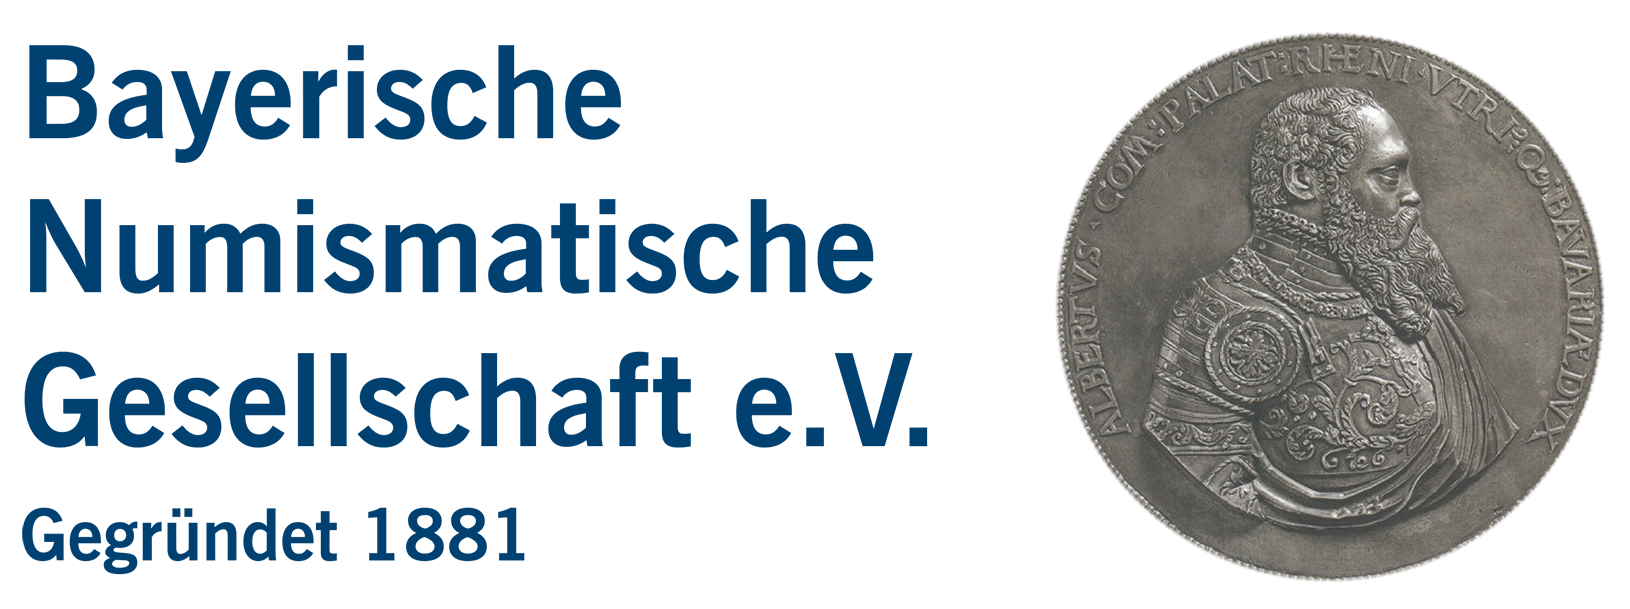 Bayerische Numismatische Gesellschaft e. V.